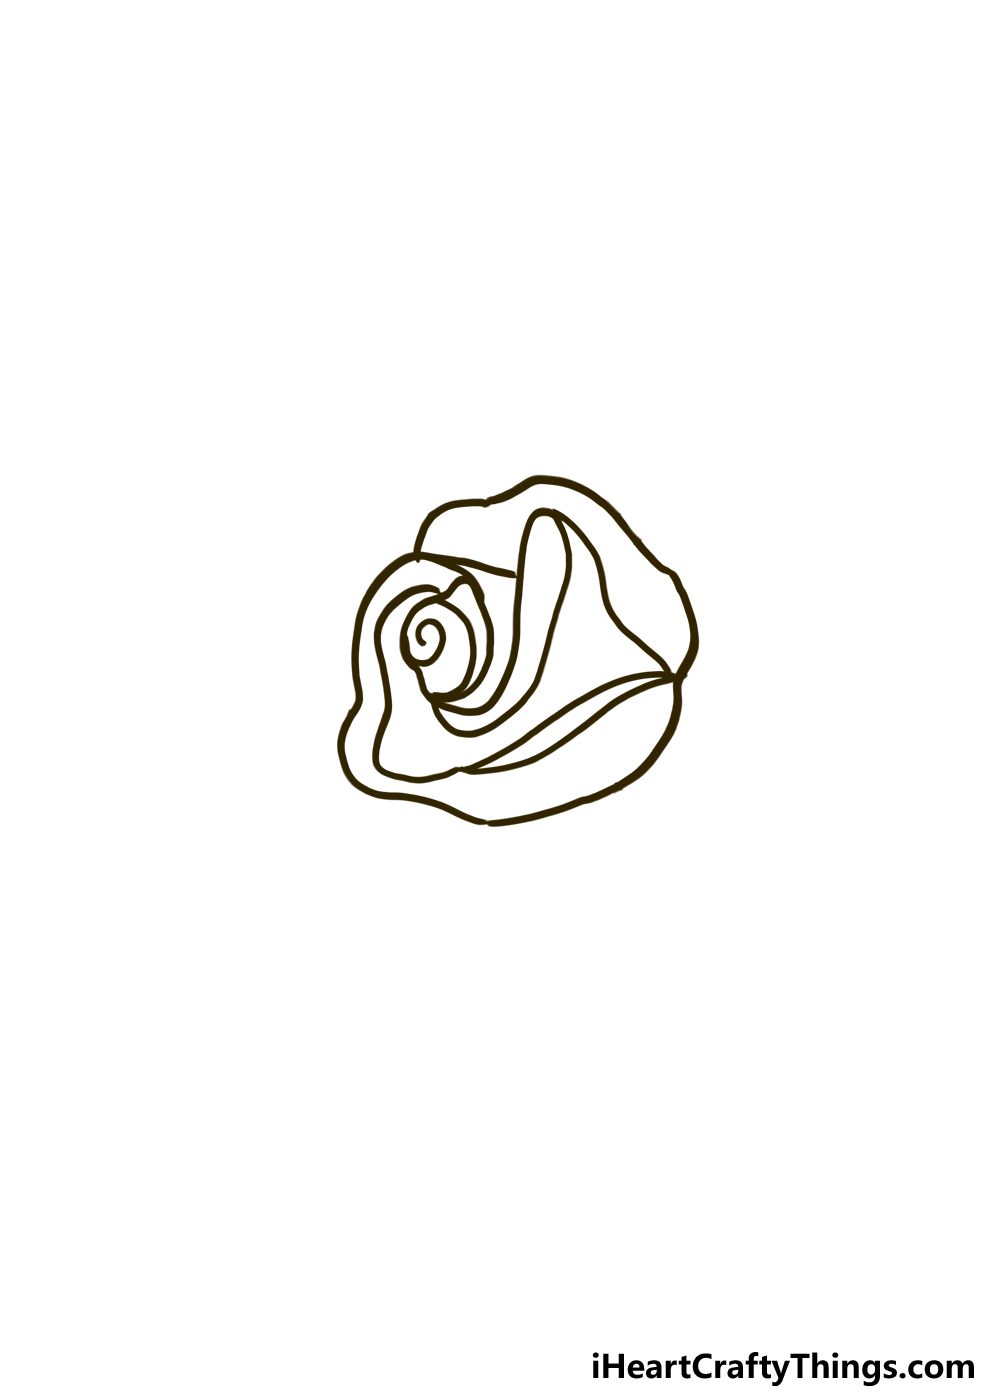 Bộ sưu tập Hình xăm hoa hồng đẹp nhất 2019  Kênh 68